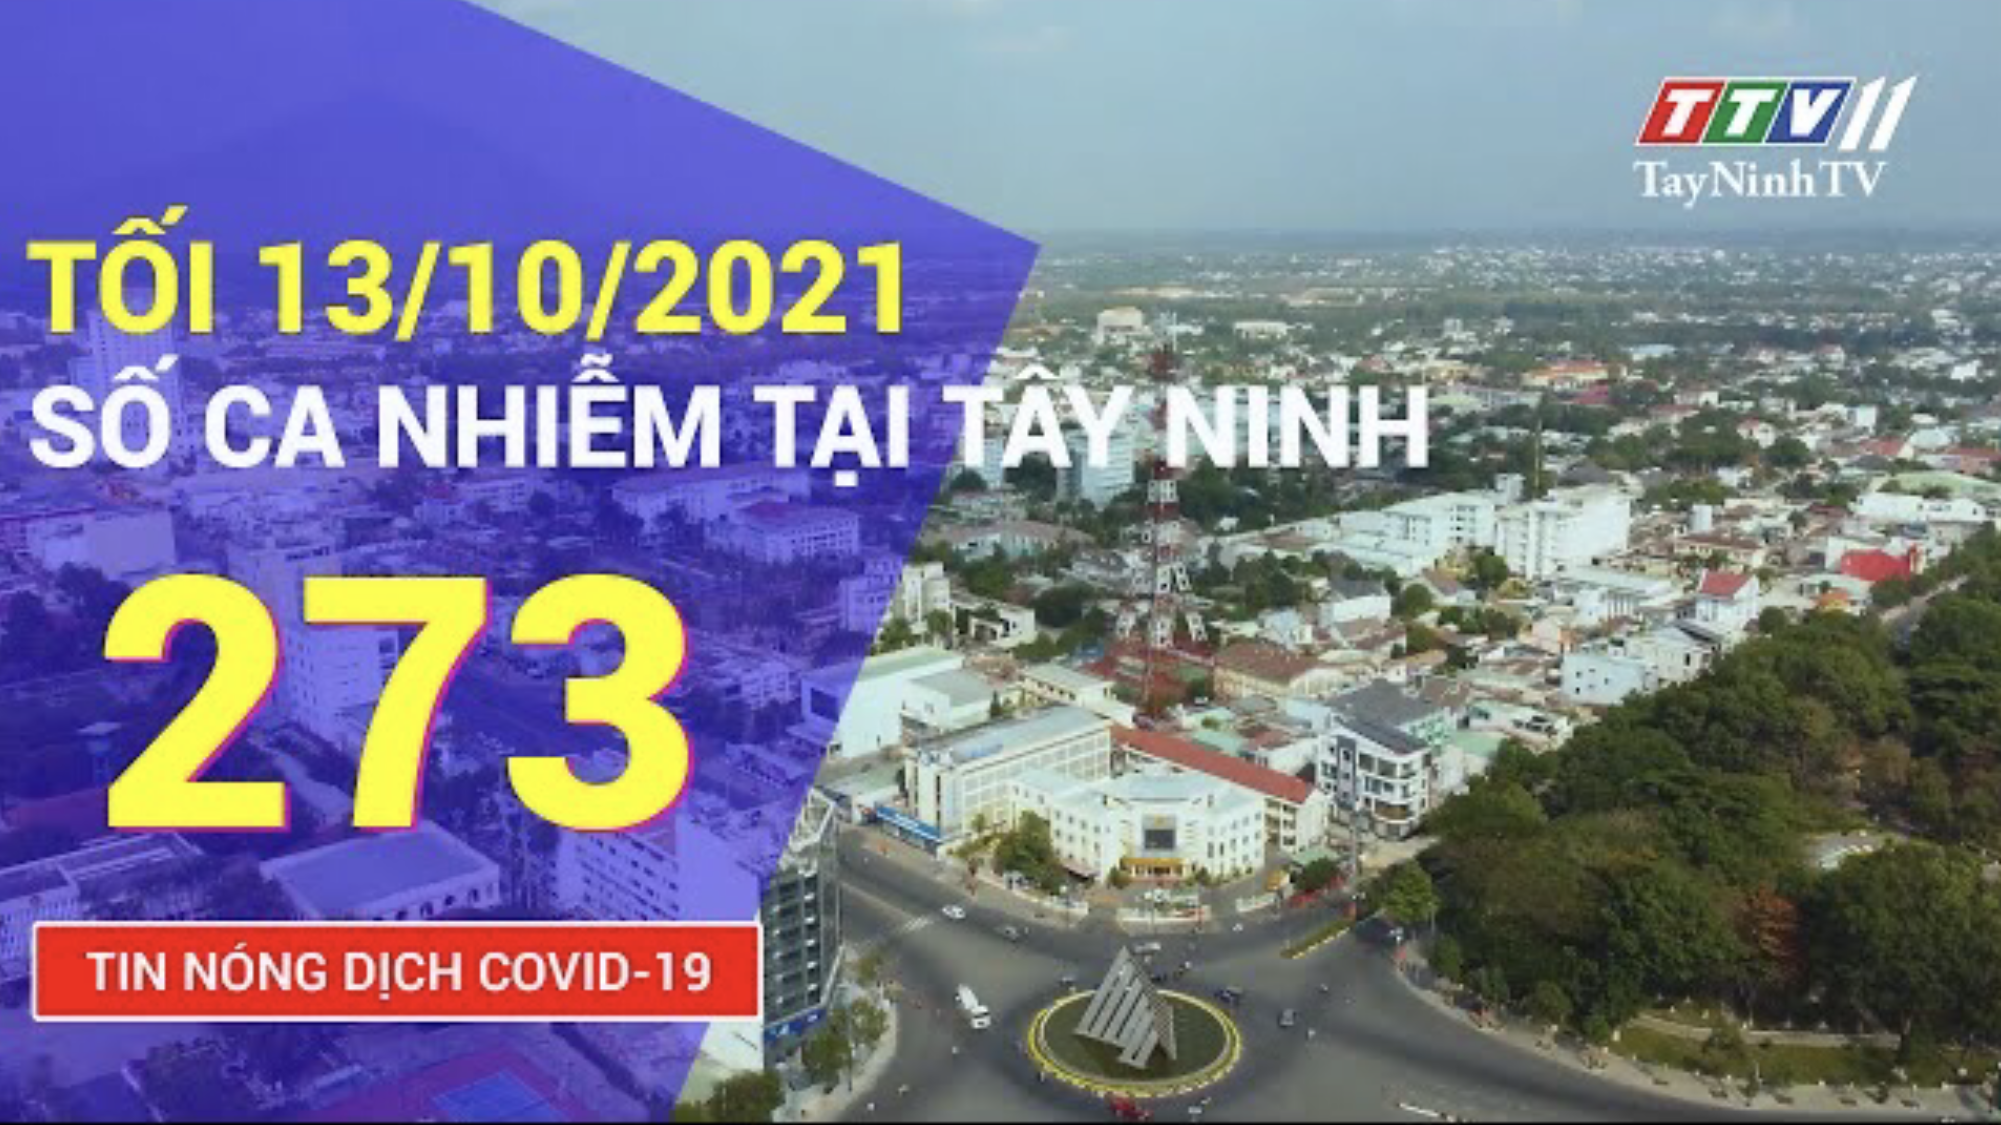 TIN TỨC COVID-19 TỐI 13/10/2021 | Tin tức hôm nay | TayNinhTV